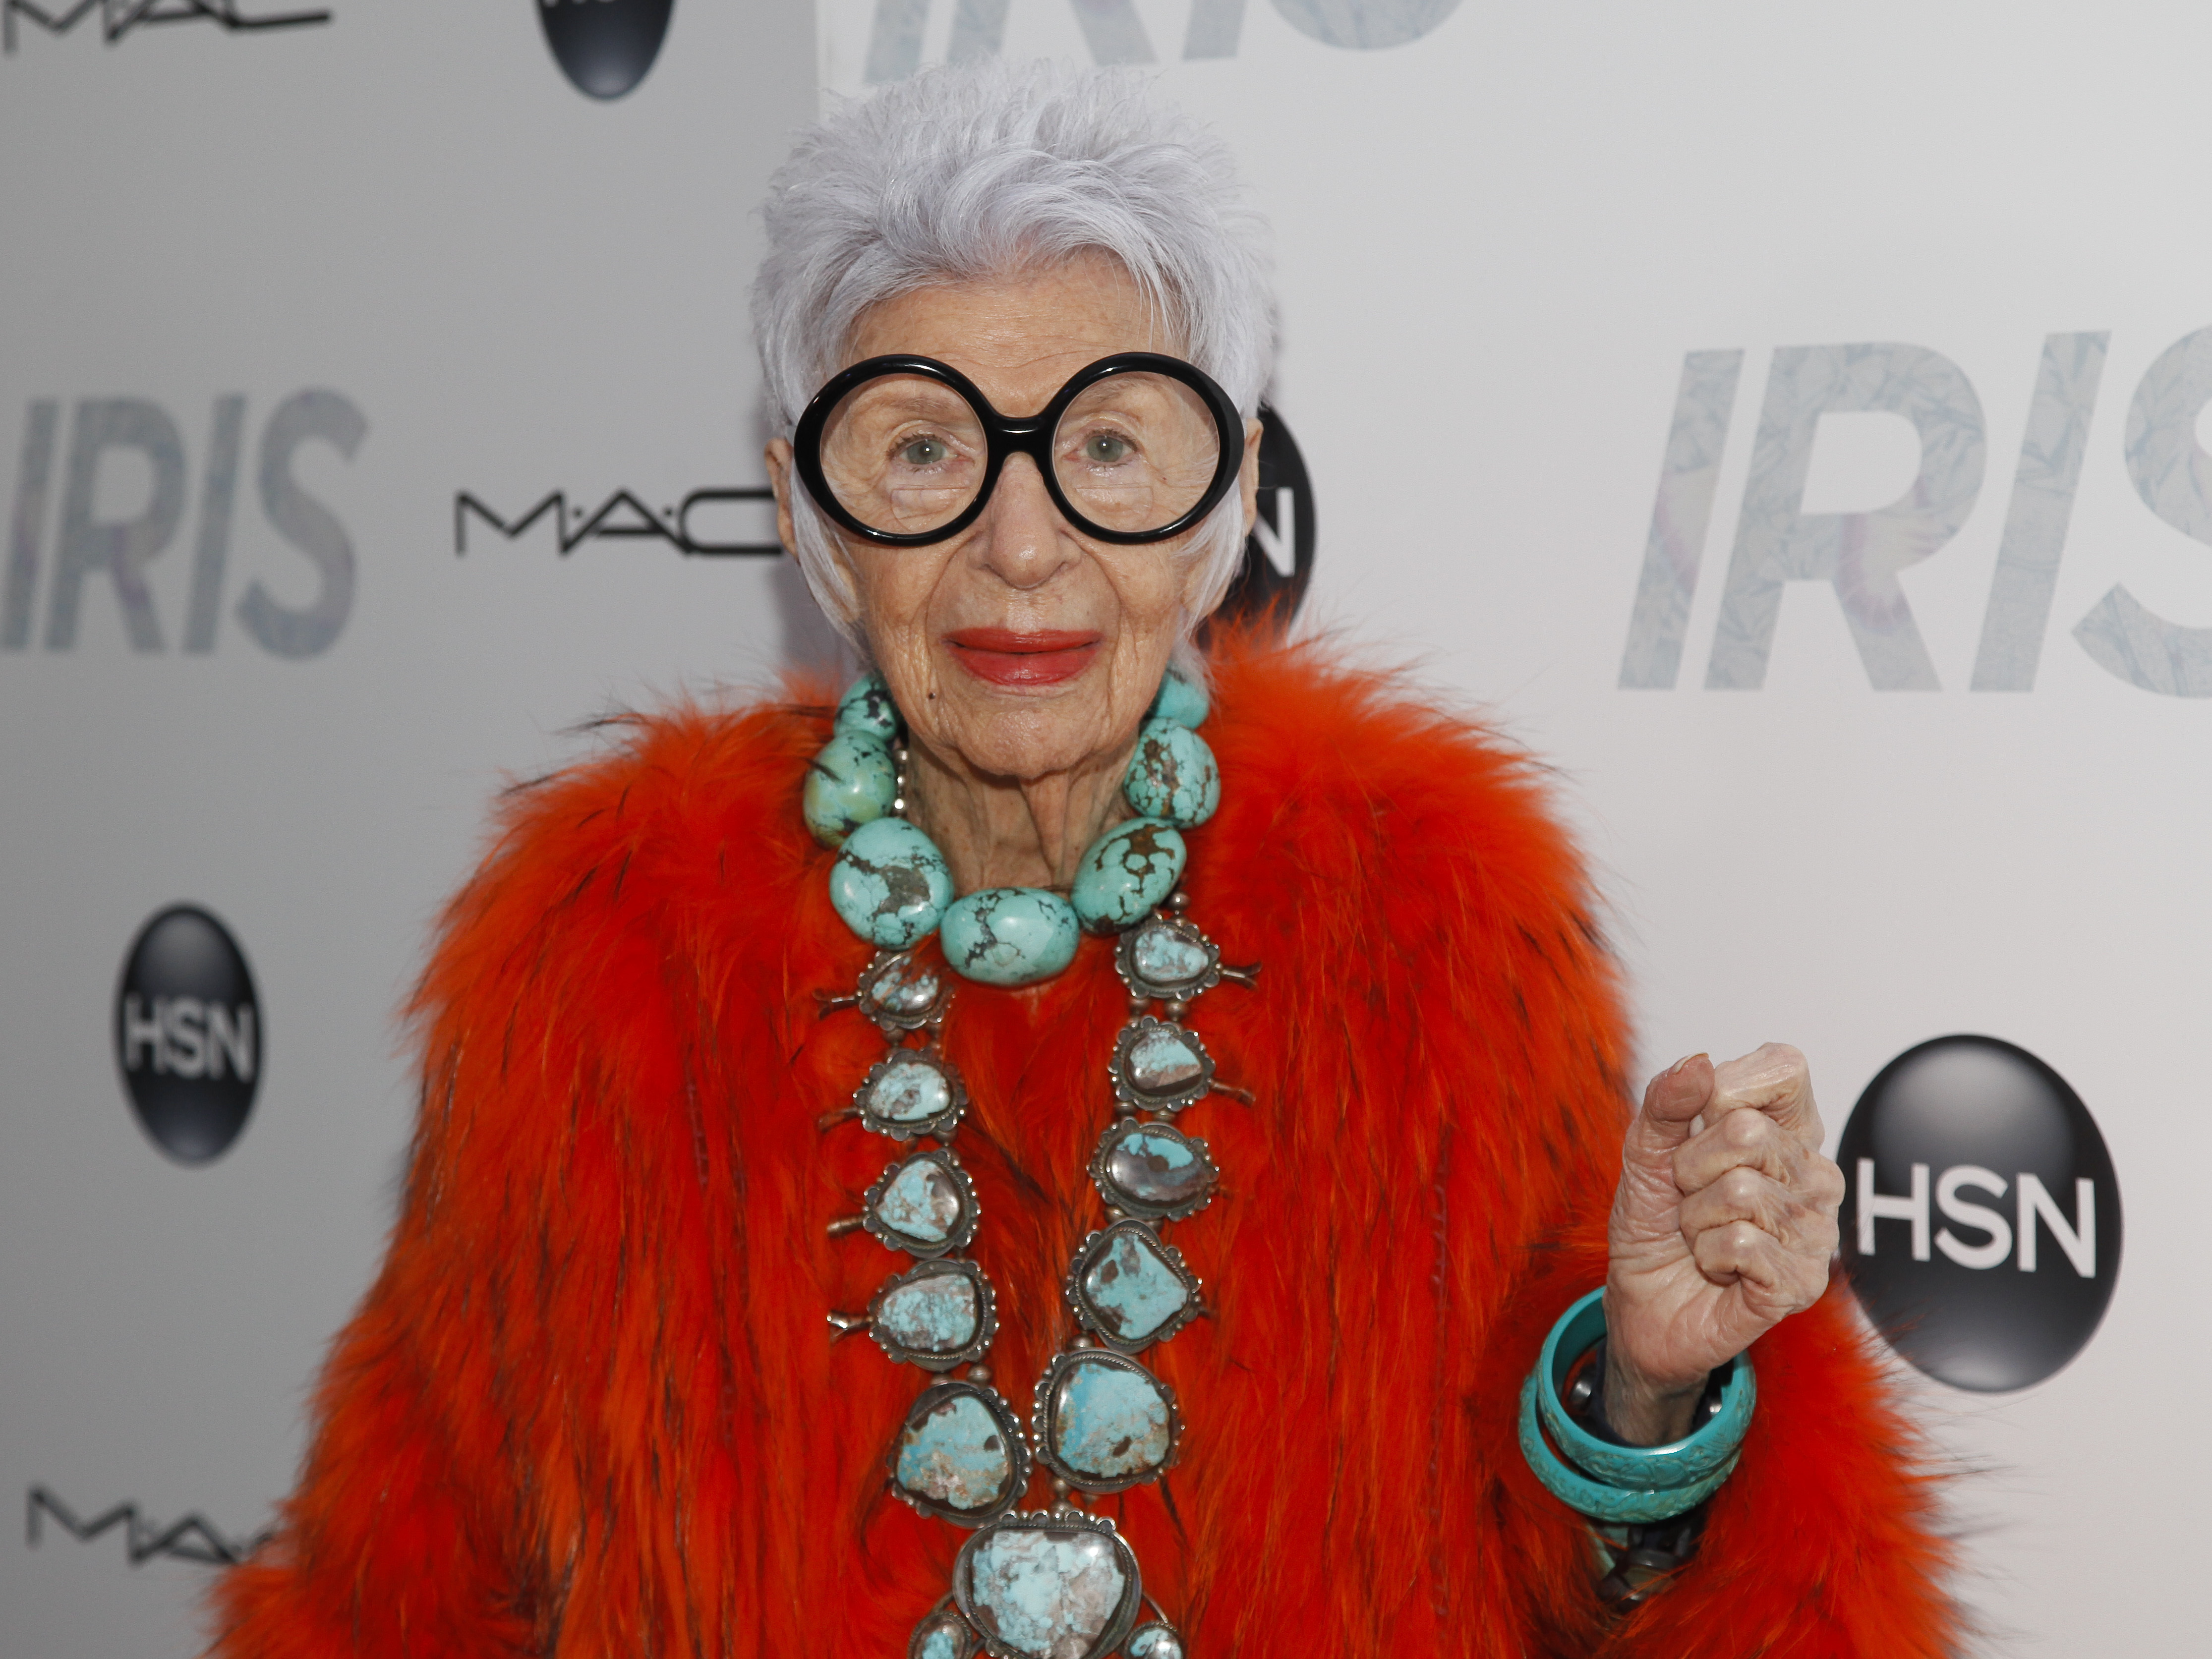 时尚标志人物艾丽丝·阿普菲尔去世,享年102岁